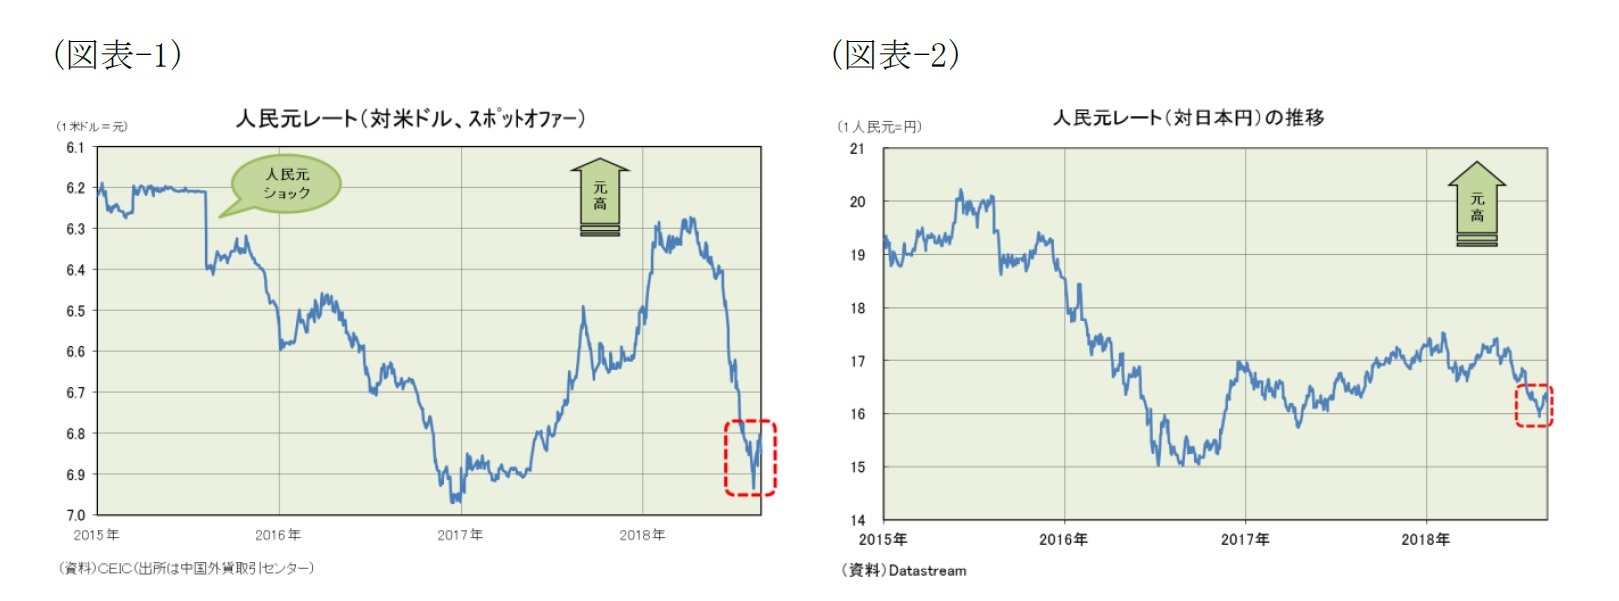 (図表-1)人民元レート（対米ドル、スポットオファー）/(図表-2)人民元レート（対日本円）の推移